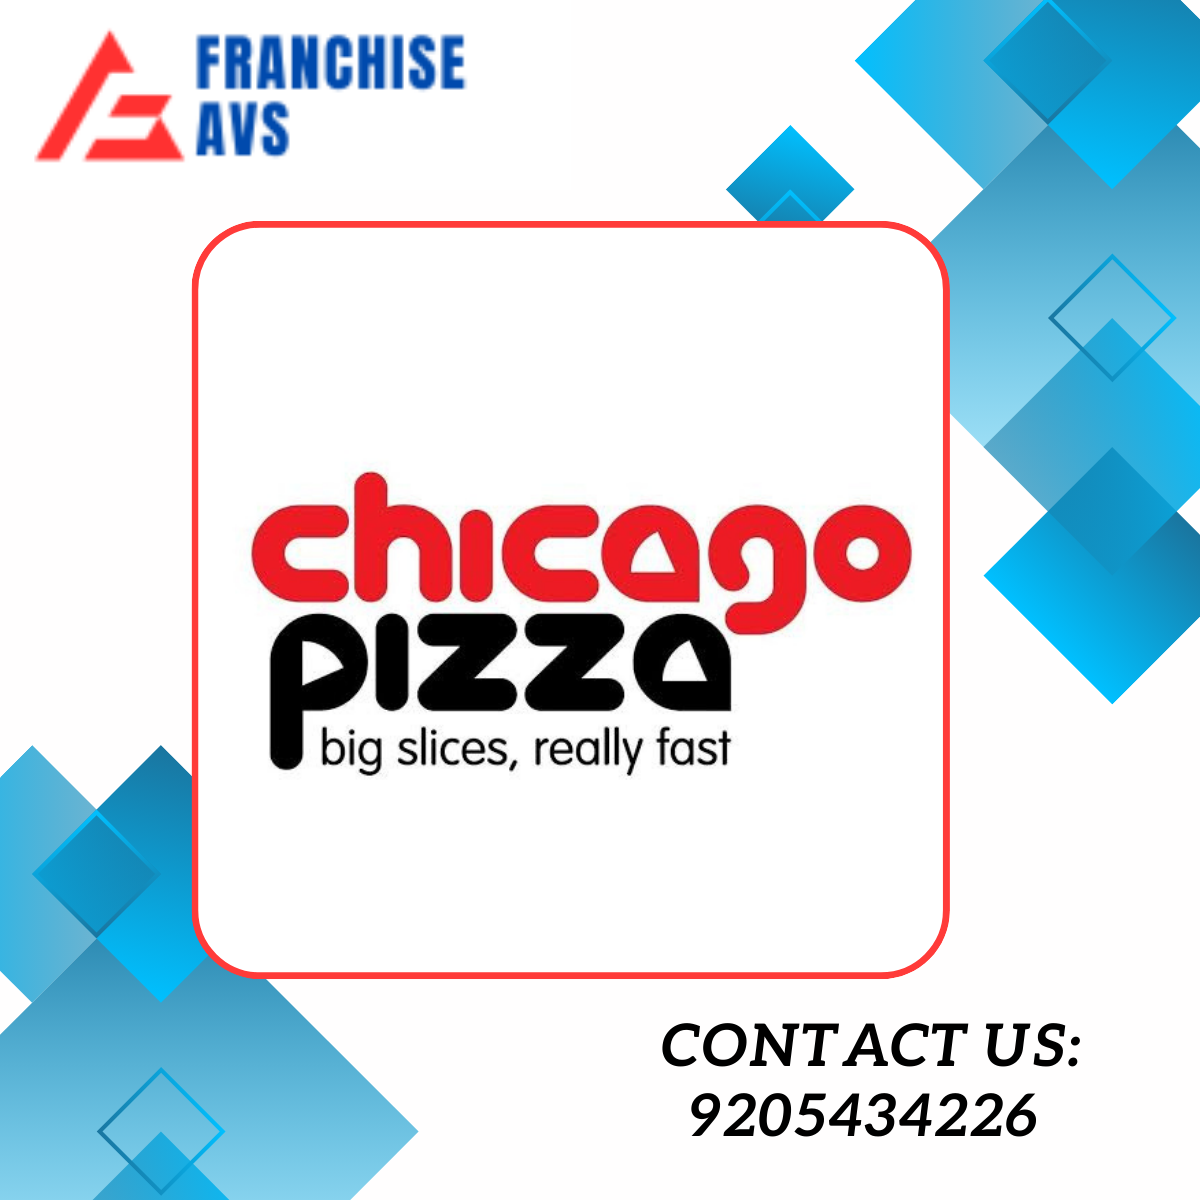 Rosati's Pizza Logo - Picture of Rosati's Pizza Of Chicago - Tripadvisor